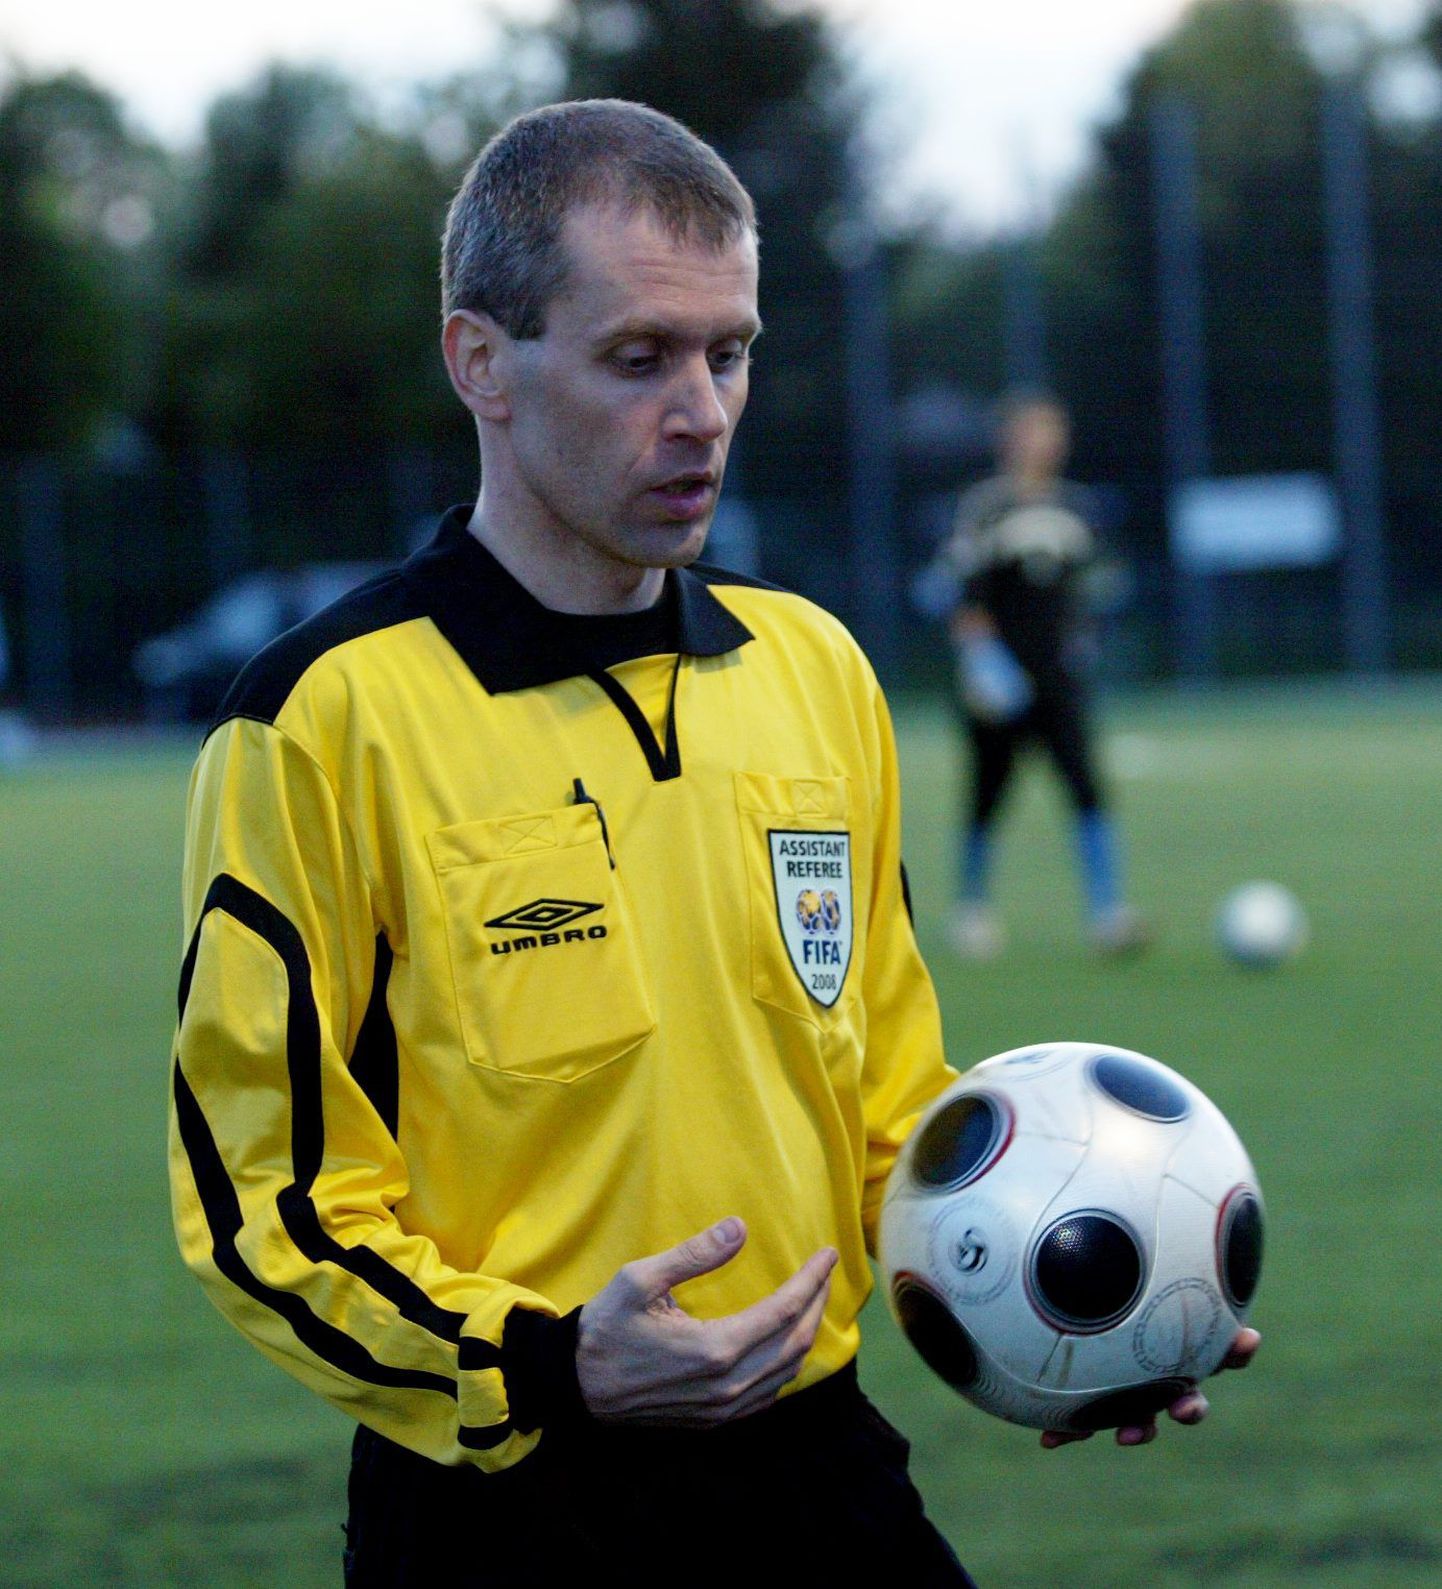 Tallinna linnaametnik Jaanus Mutli tegutseb ka jalgpallikohtunikuna.